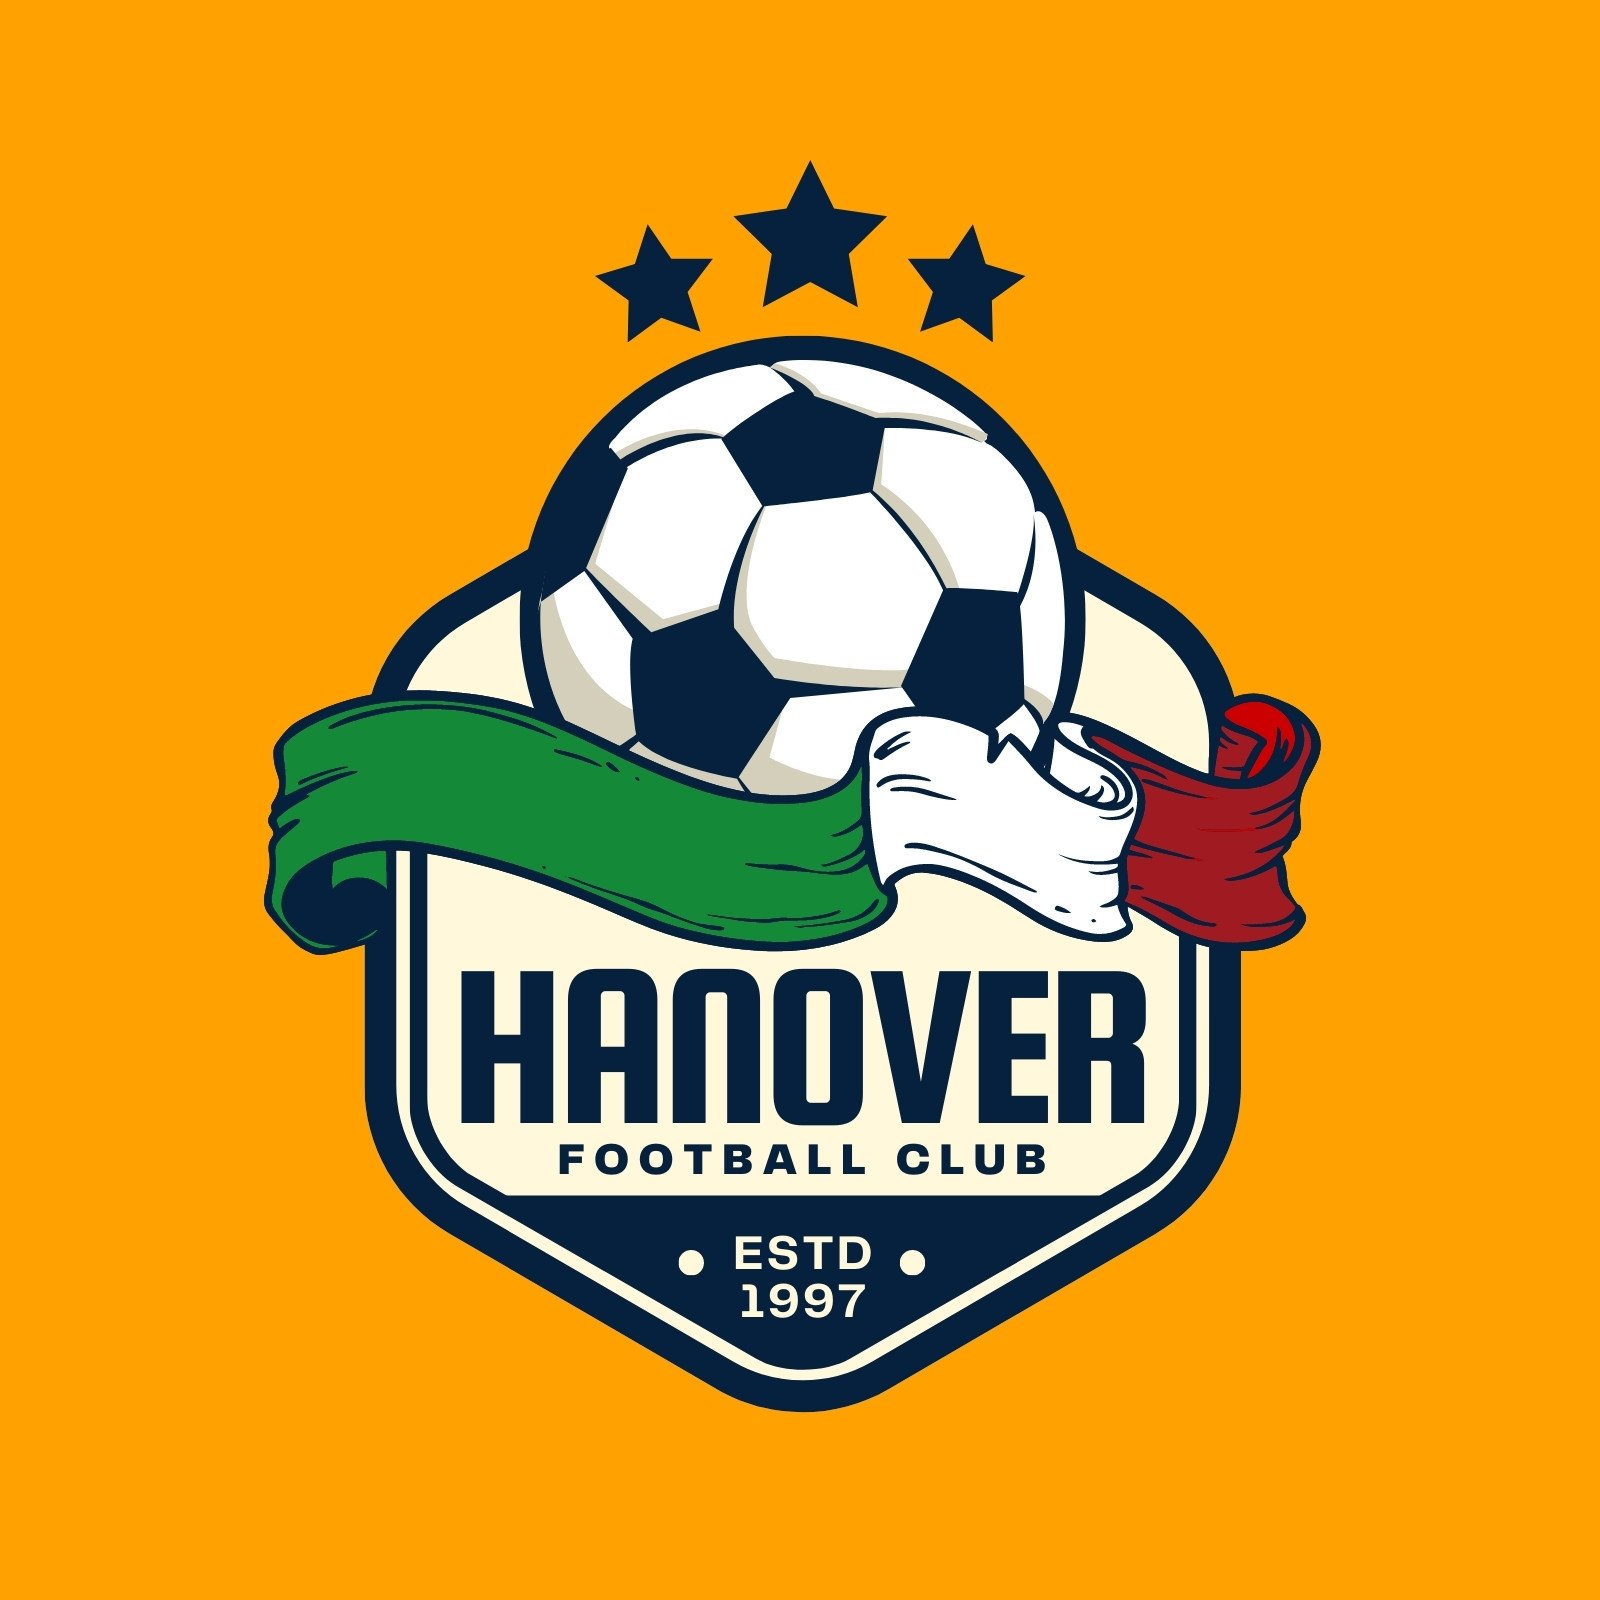 sports club logo creator